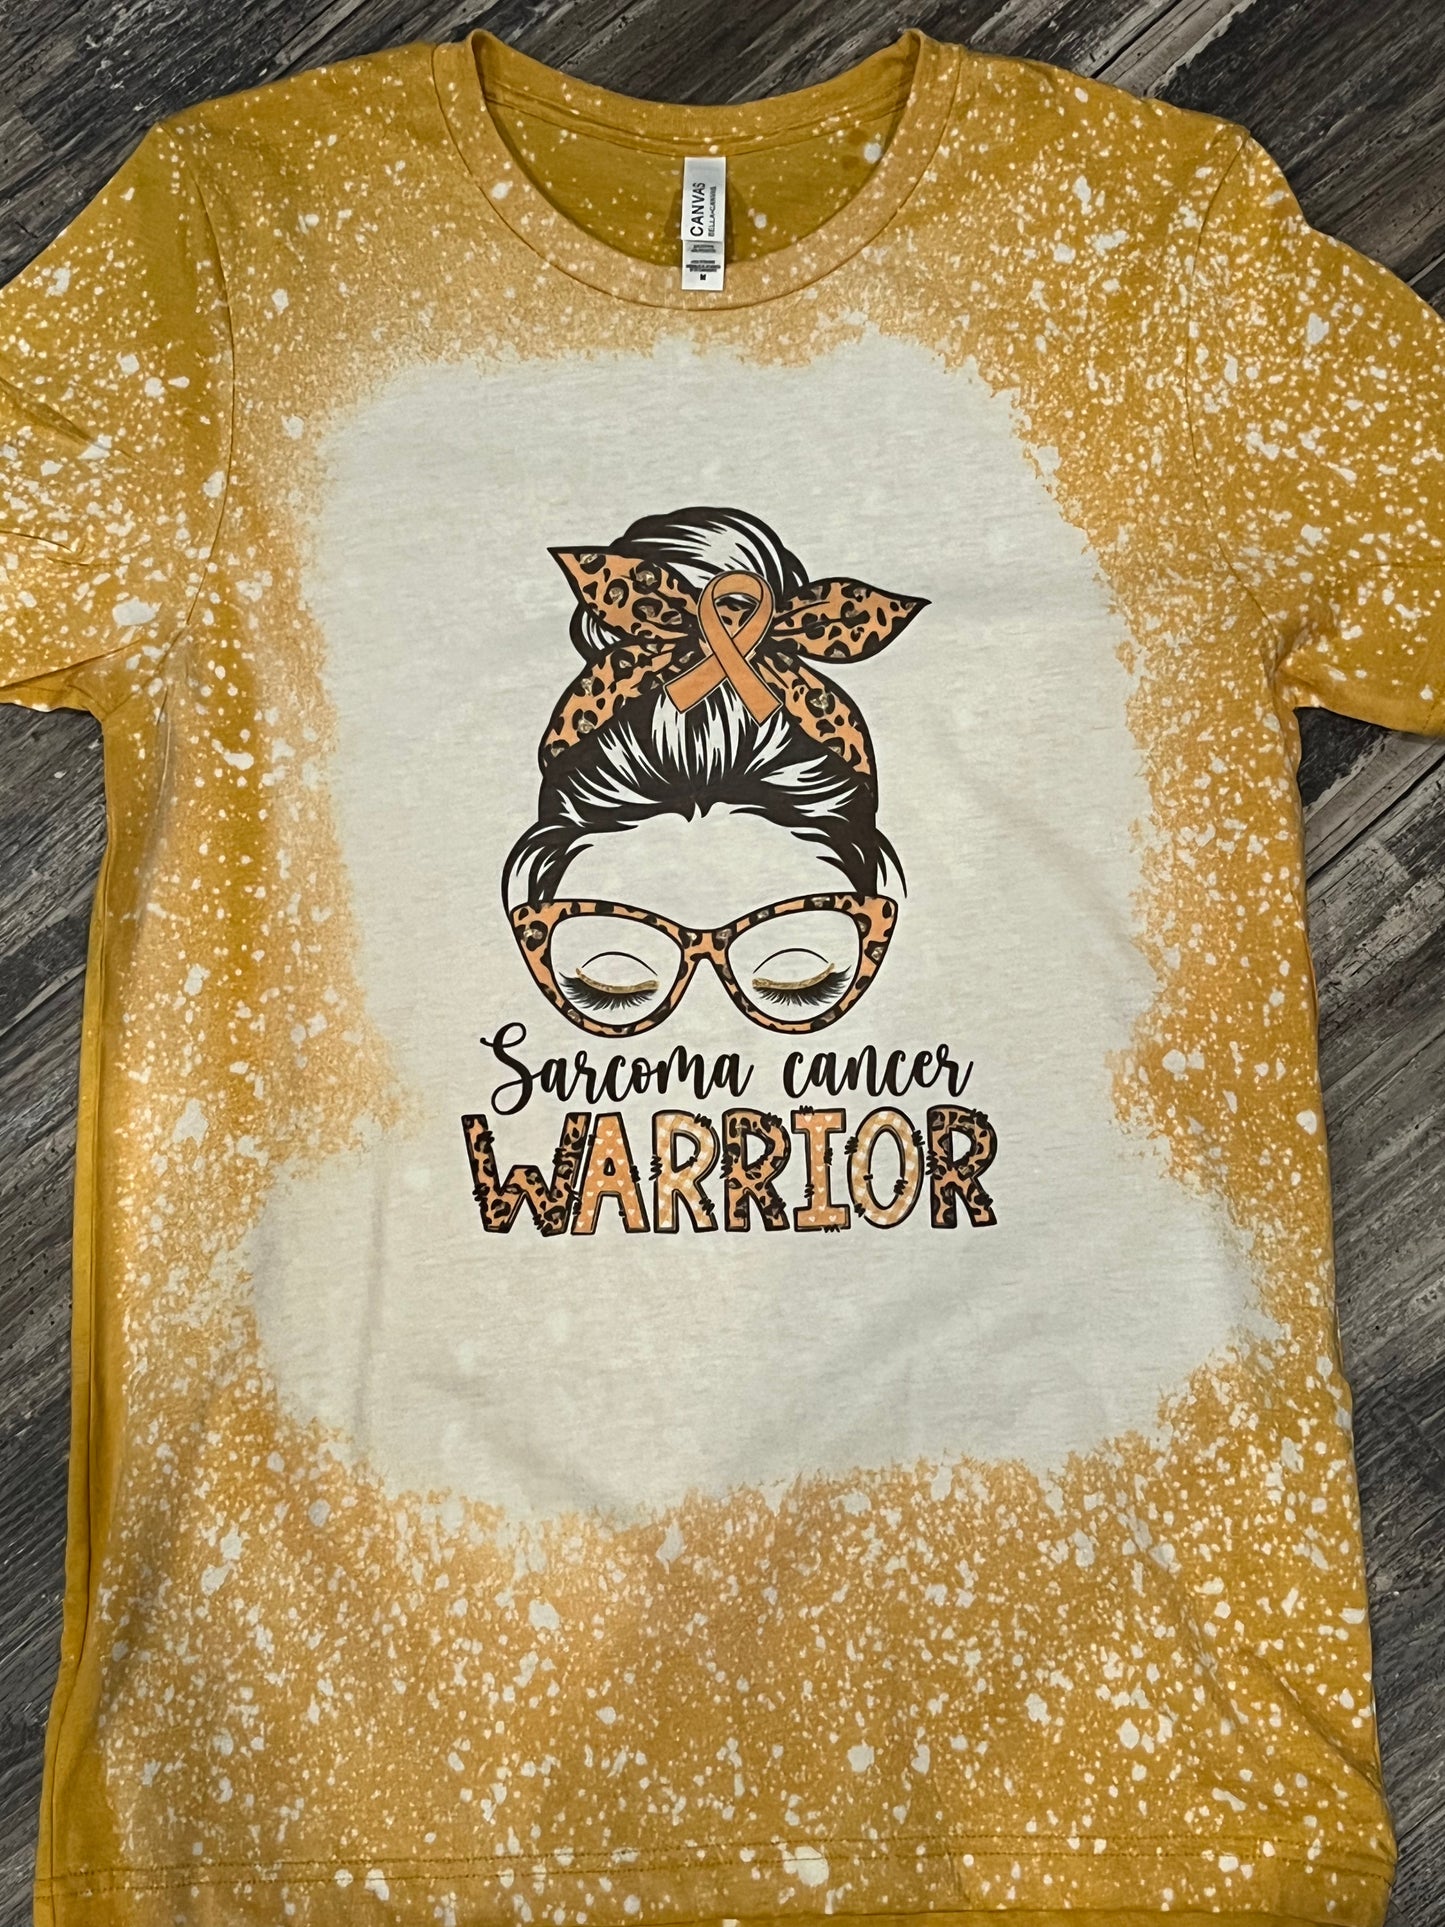 Sarcoma Cancer Warrior Teeshirt